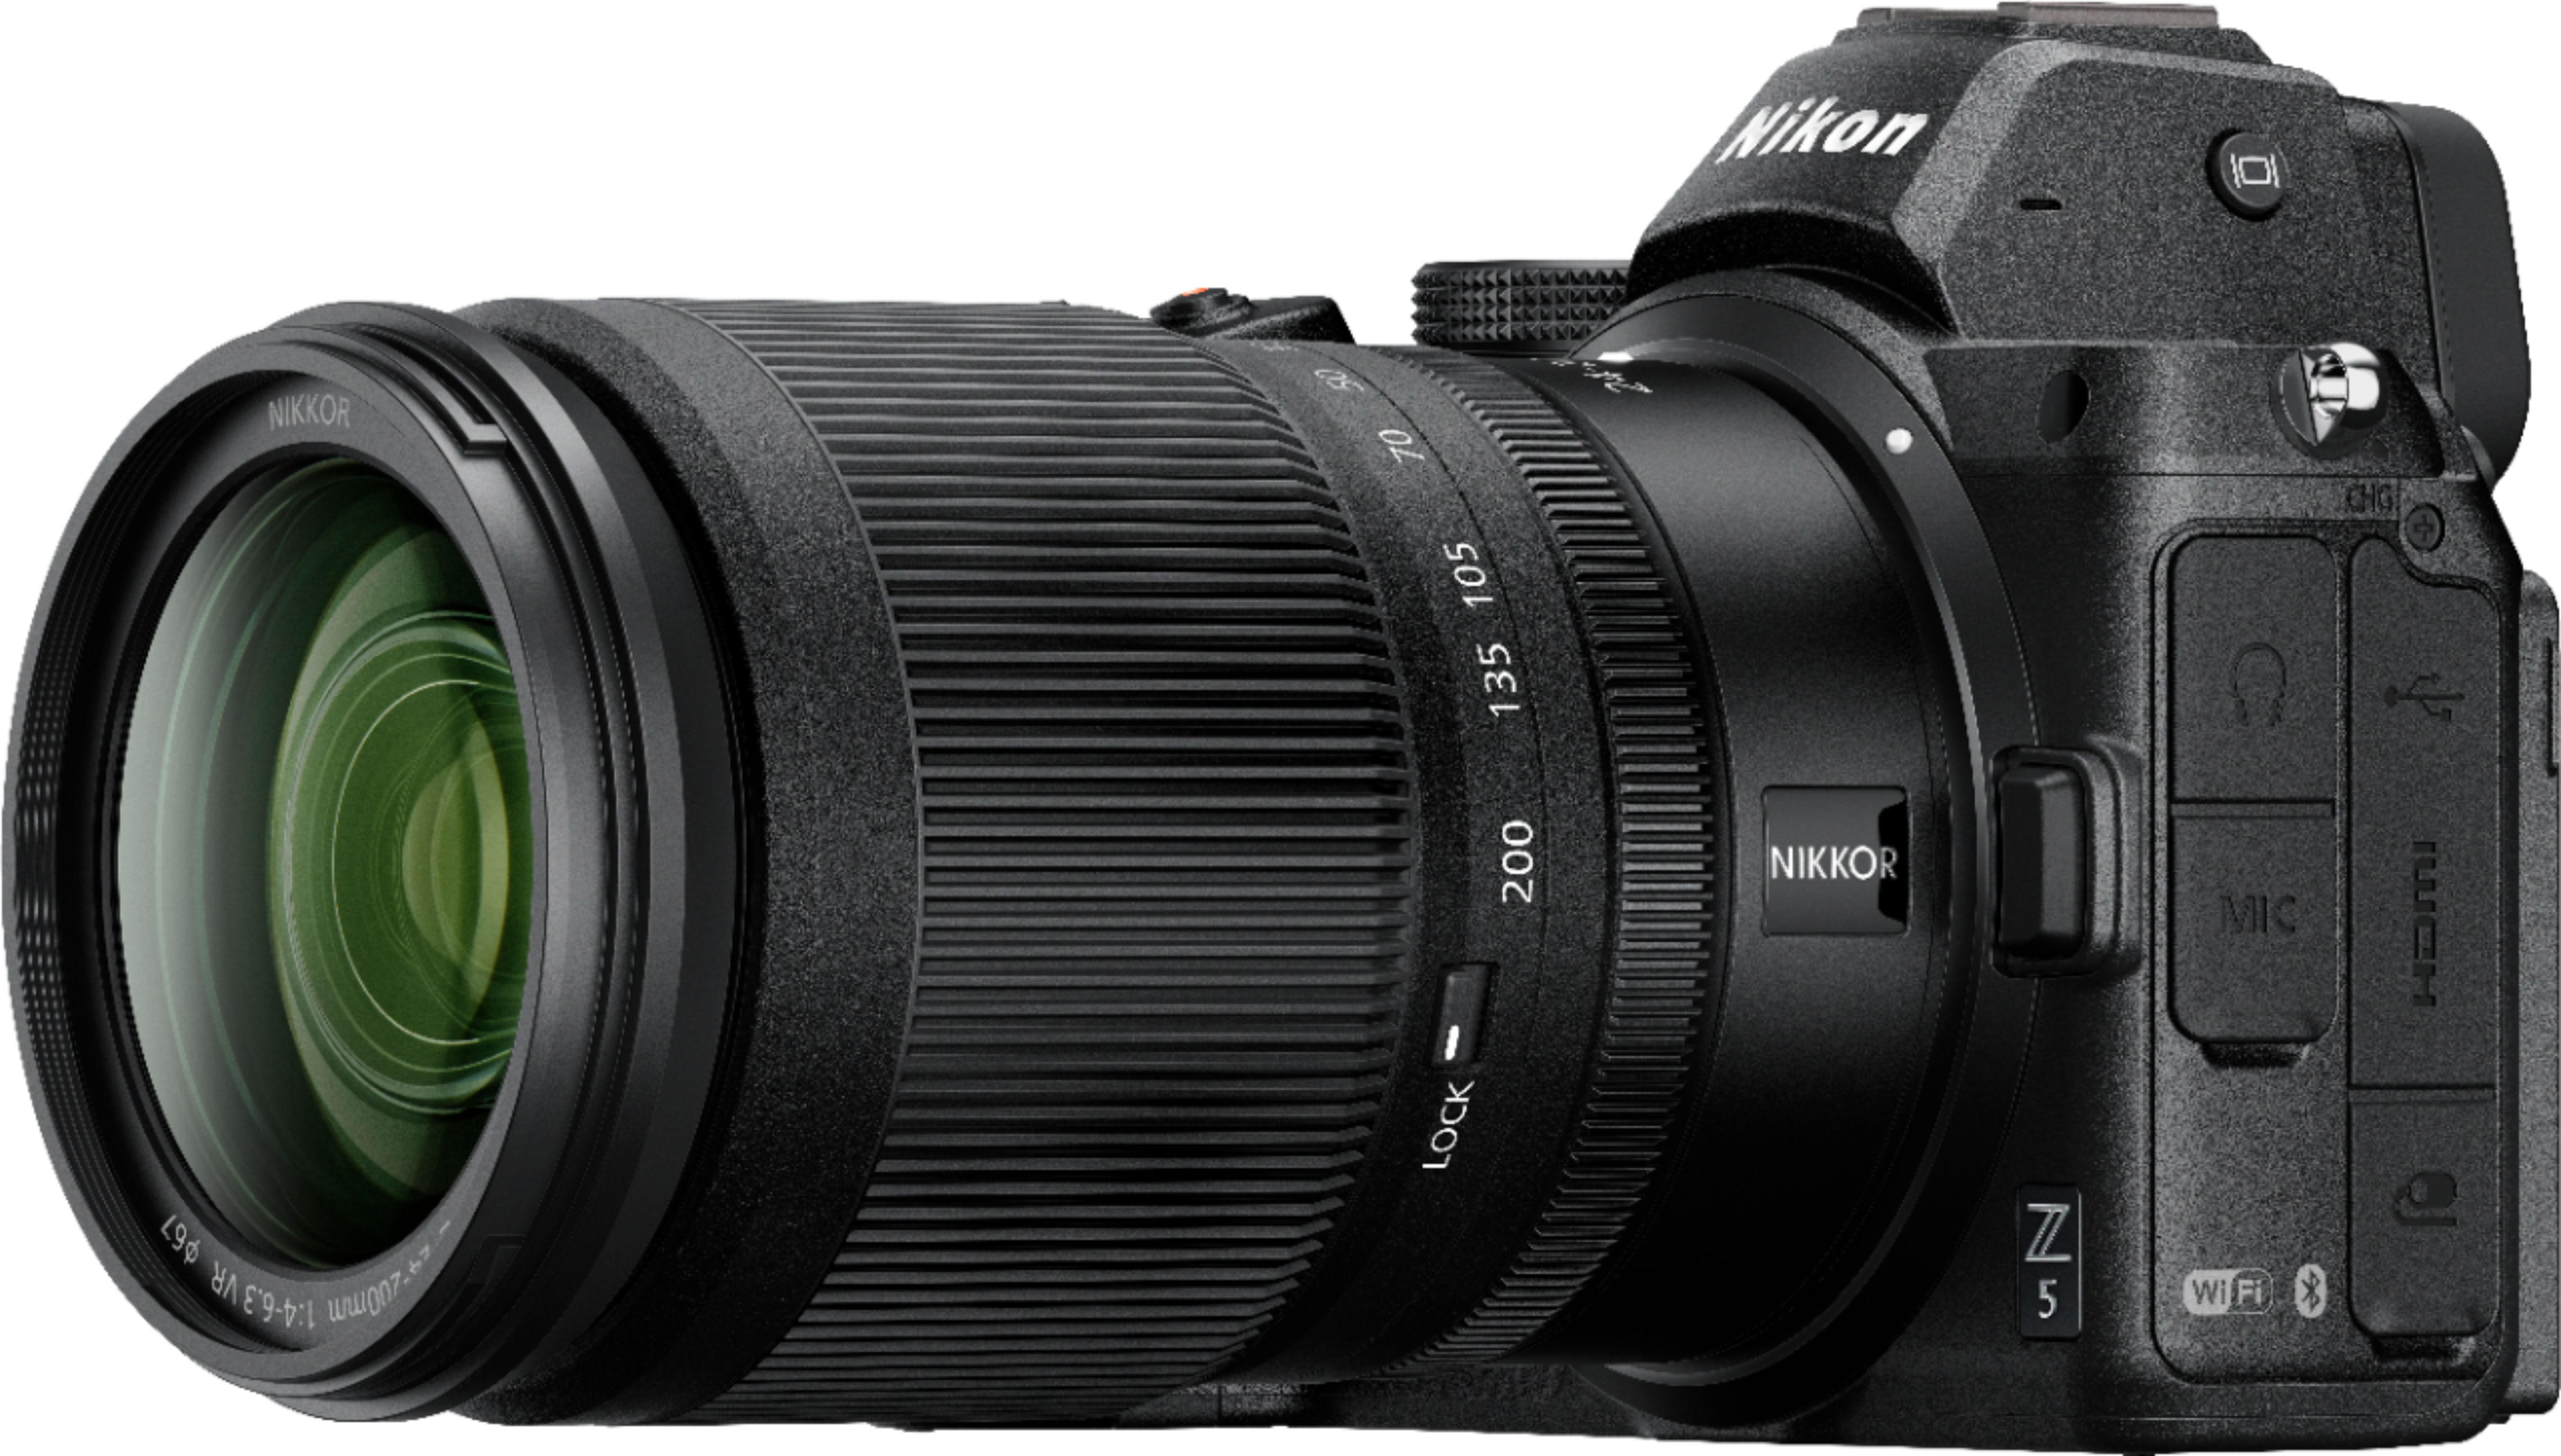 Nikon Z 5 w/ NIKKOR Z 24-200mm f/4-6.3 VR Black 1641 - Best Buy